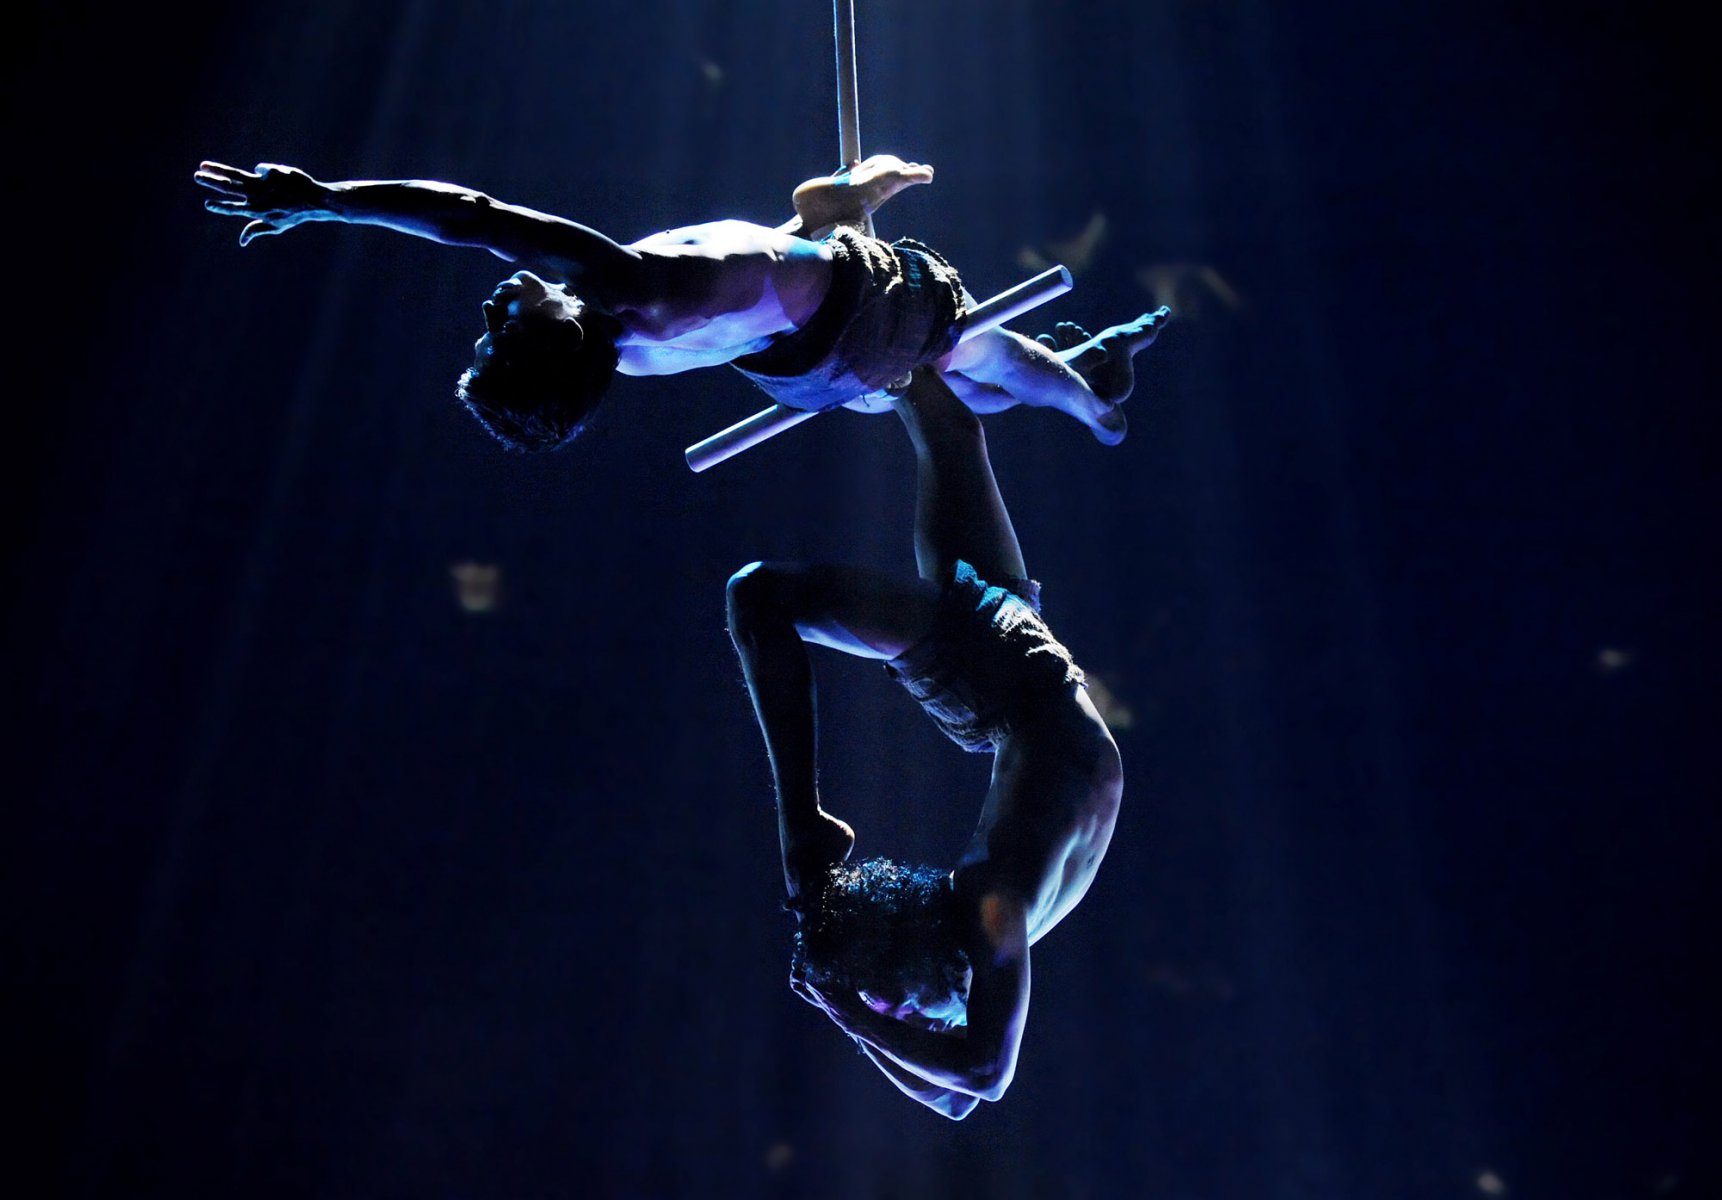 Ineinander verschlungen hängen zwei Akrobaten der Show "India" in Frankfurt unter der Zeltkuppel. Foto: Boris Roessler/dpa